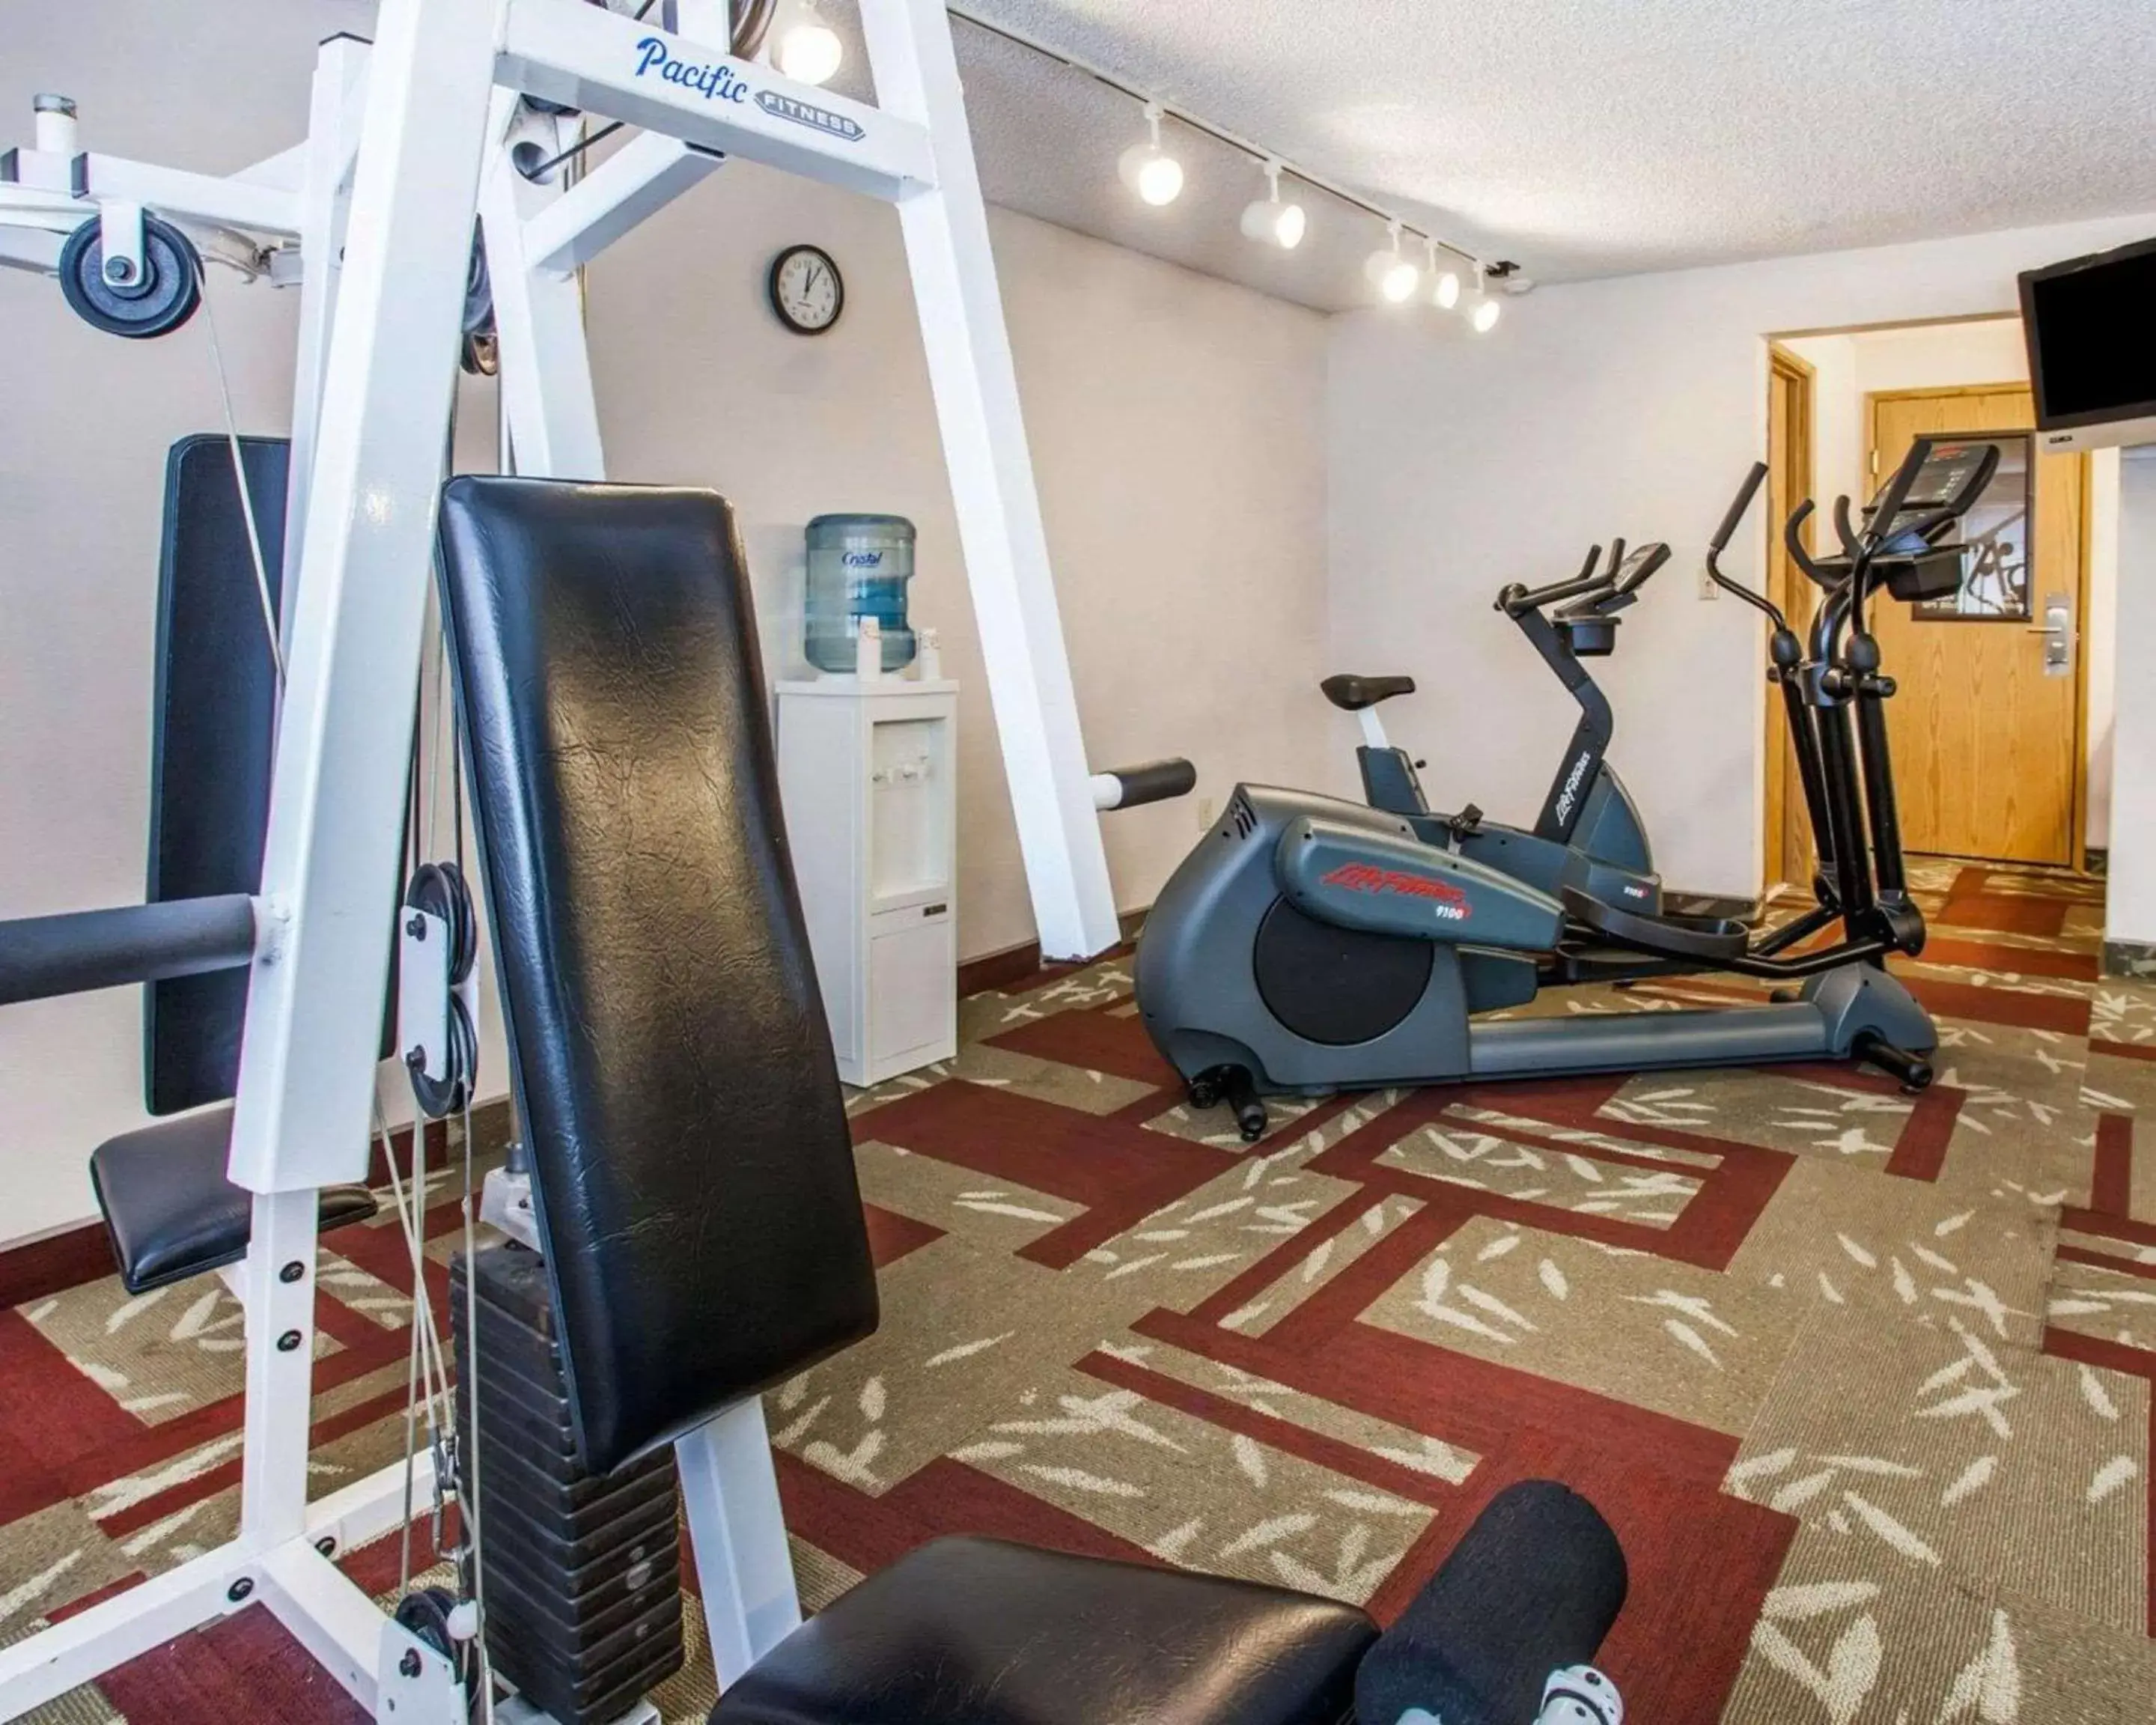 Fitness centre/facilities, Fitness Center/Facilities in Comfort Inn Kirkland